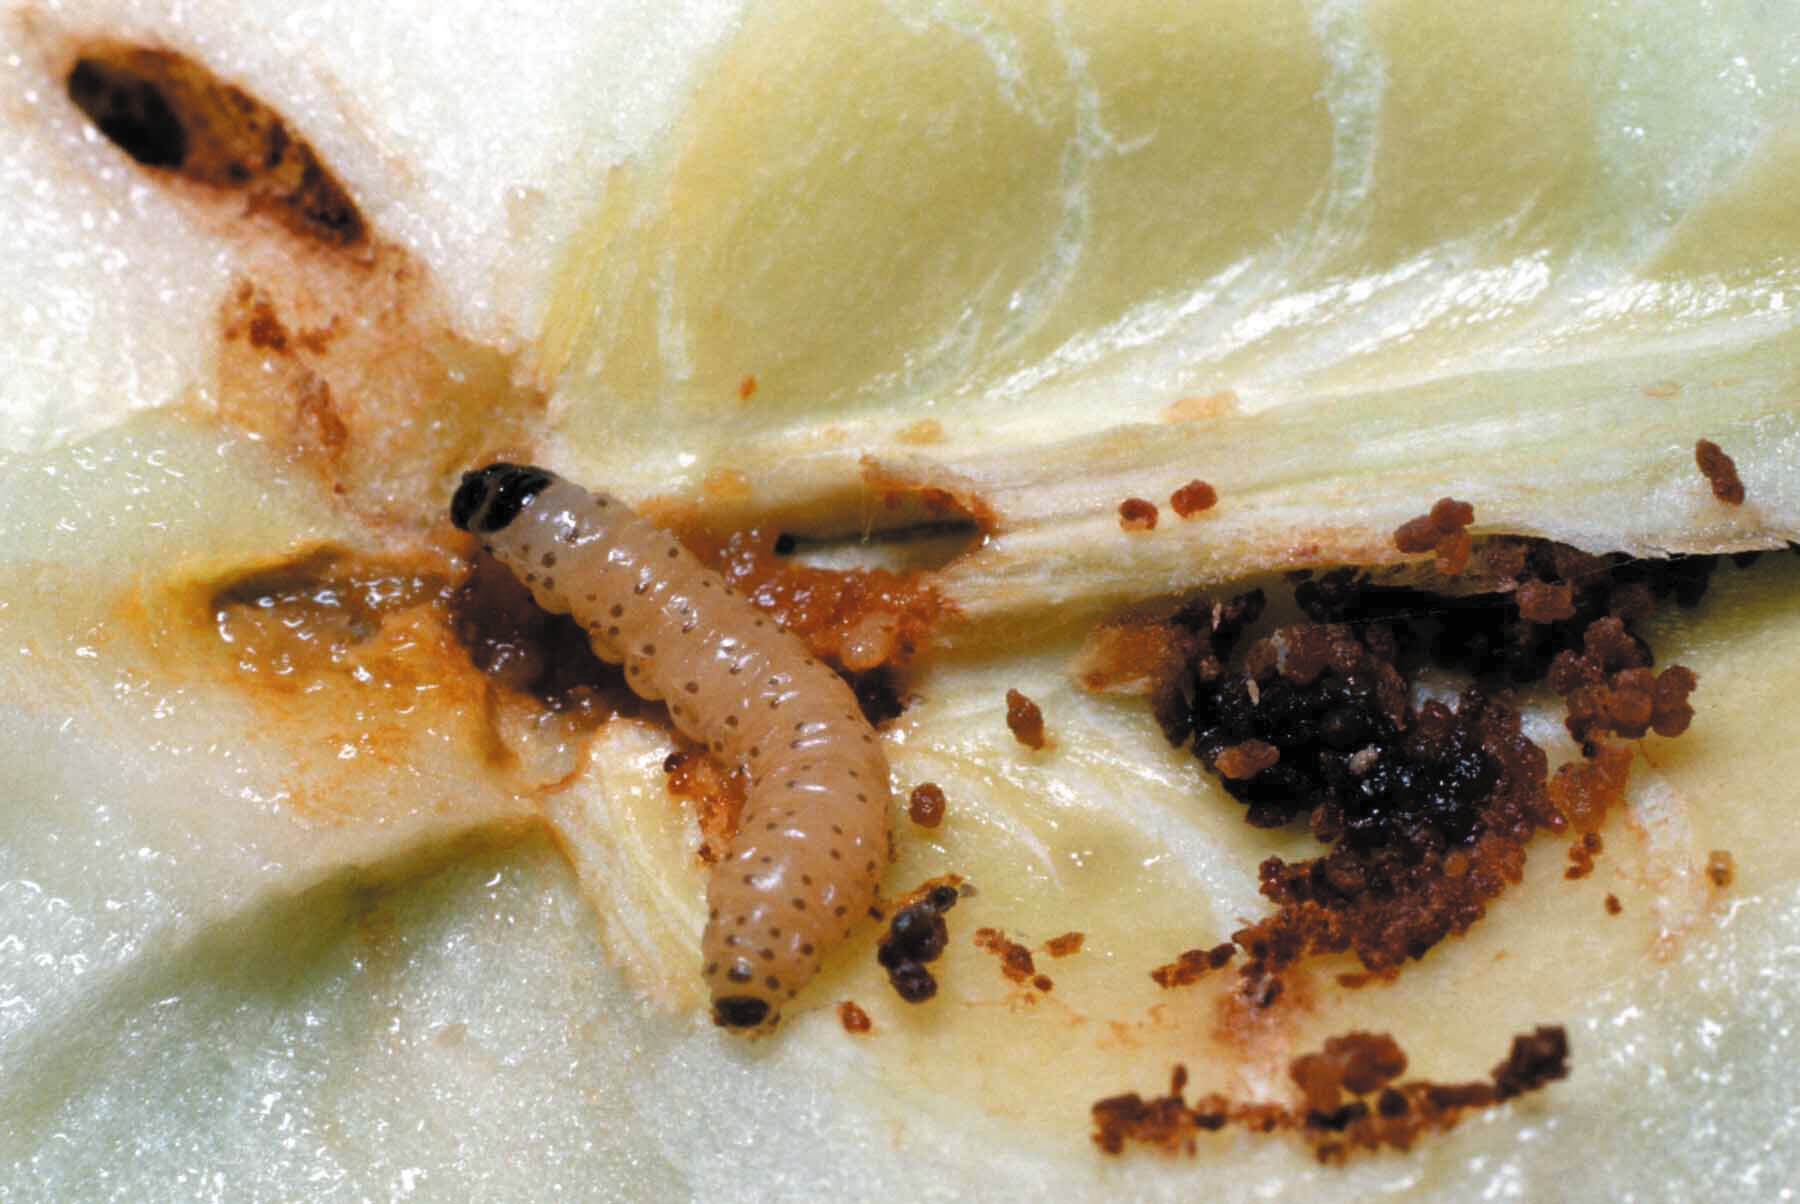 Dégâts de la chenille du carpocapse dans une pomme : une galerie aboutissant directement aux pépins dévorés par la larve